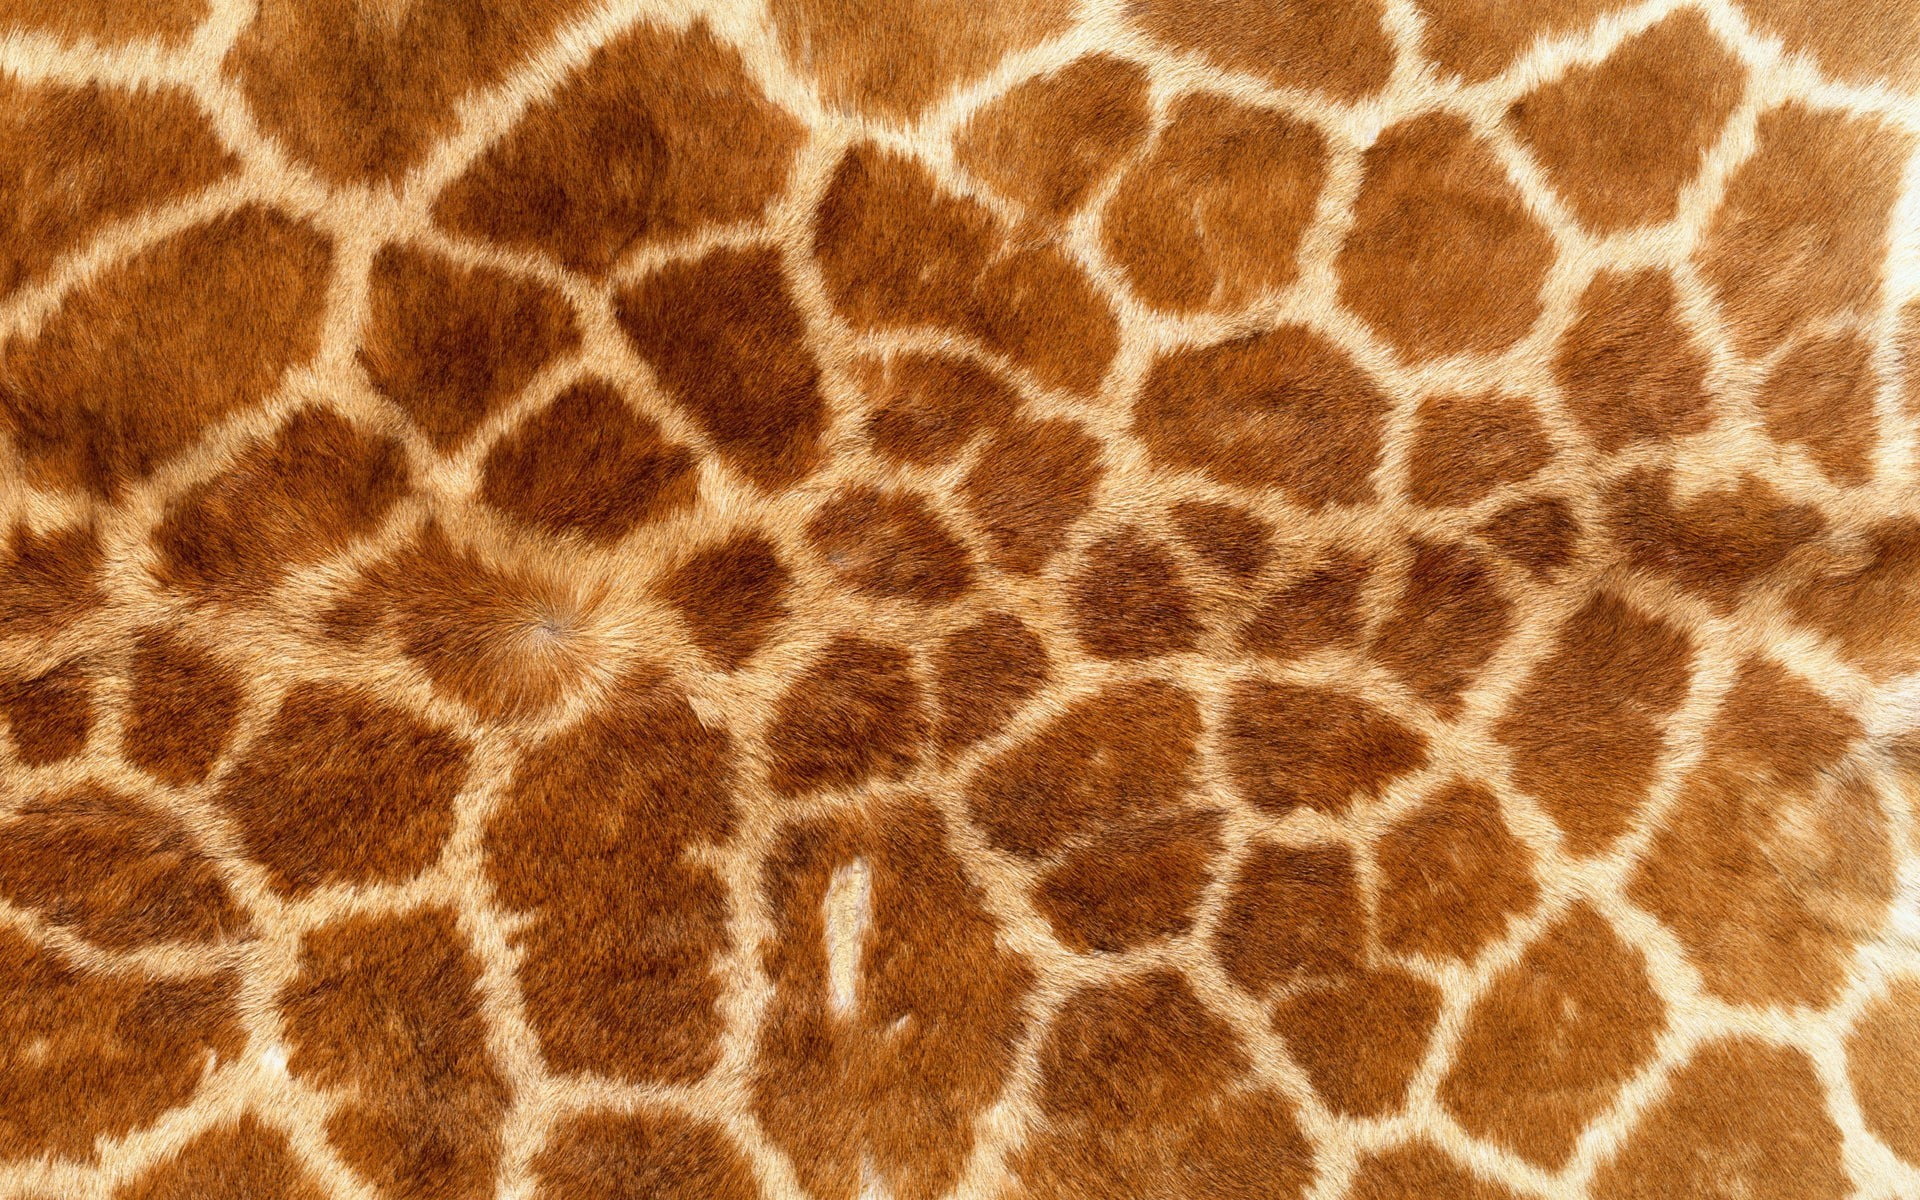 Giraffe Print Images  Free Download on Freepik